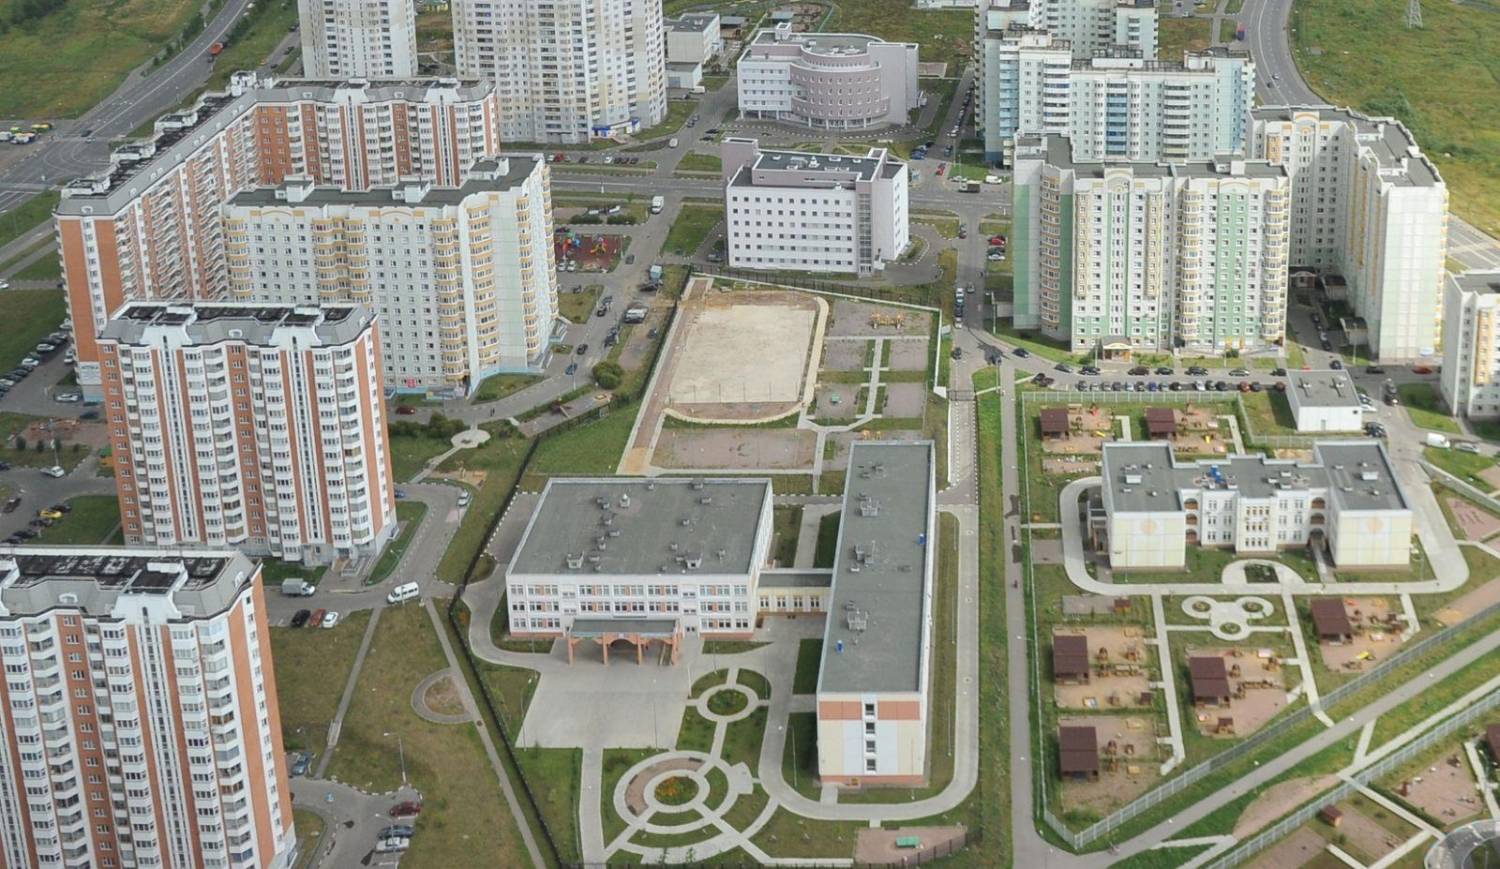 Вблизи аэропорта Внуково в Новой Москве возведут жилые микрорайоны, гостиницы и парки